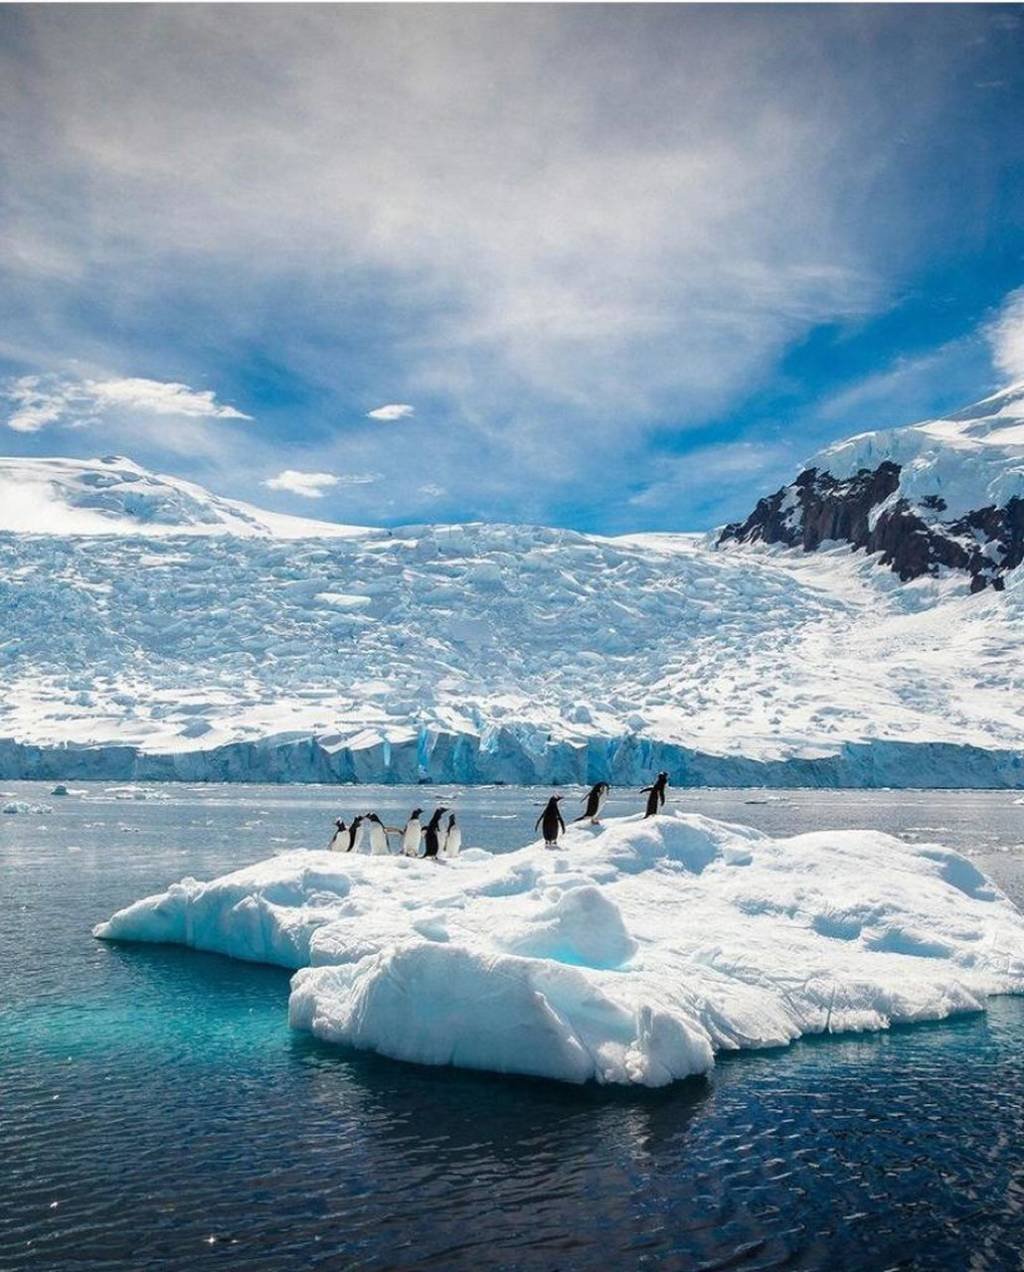 Antártica: Brasil está há 40 anos no continente gelado, e agora de casa nova